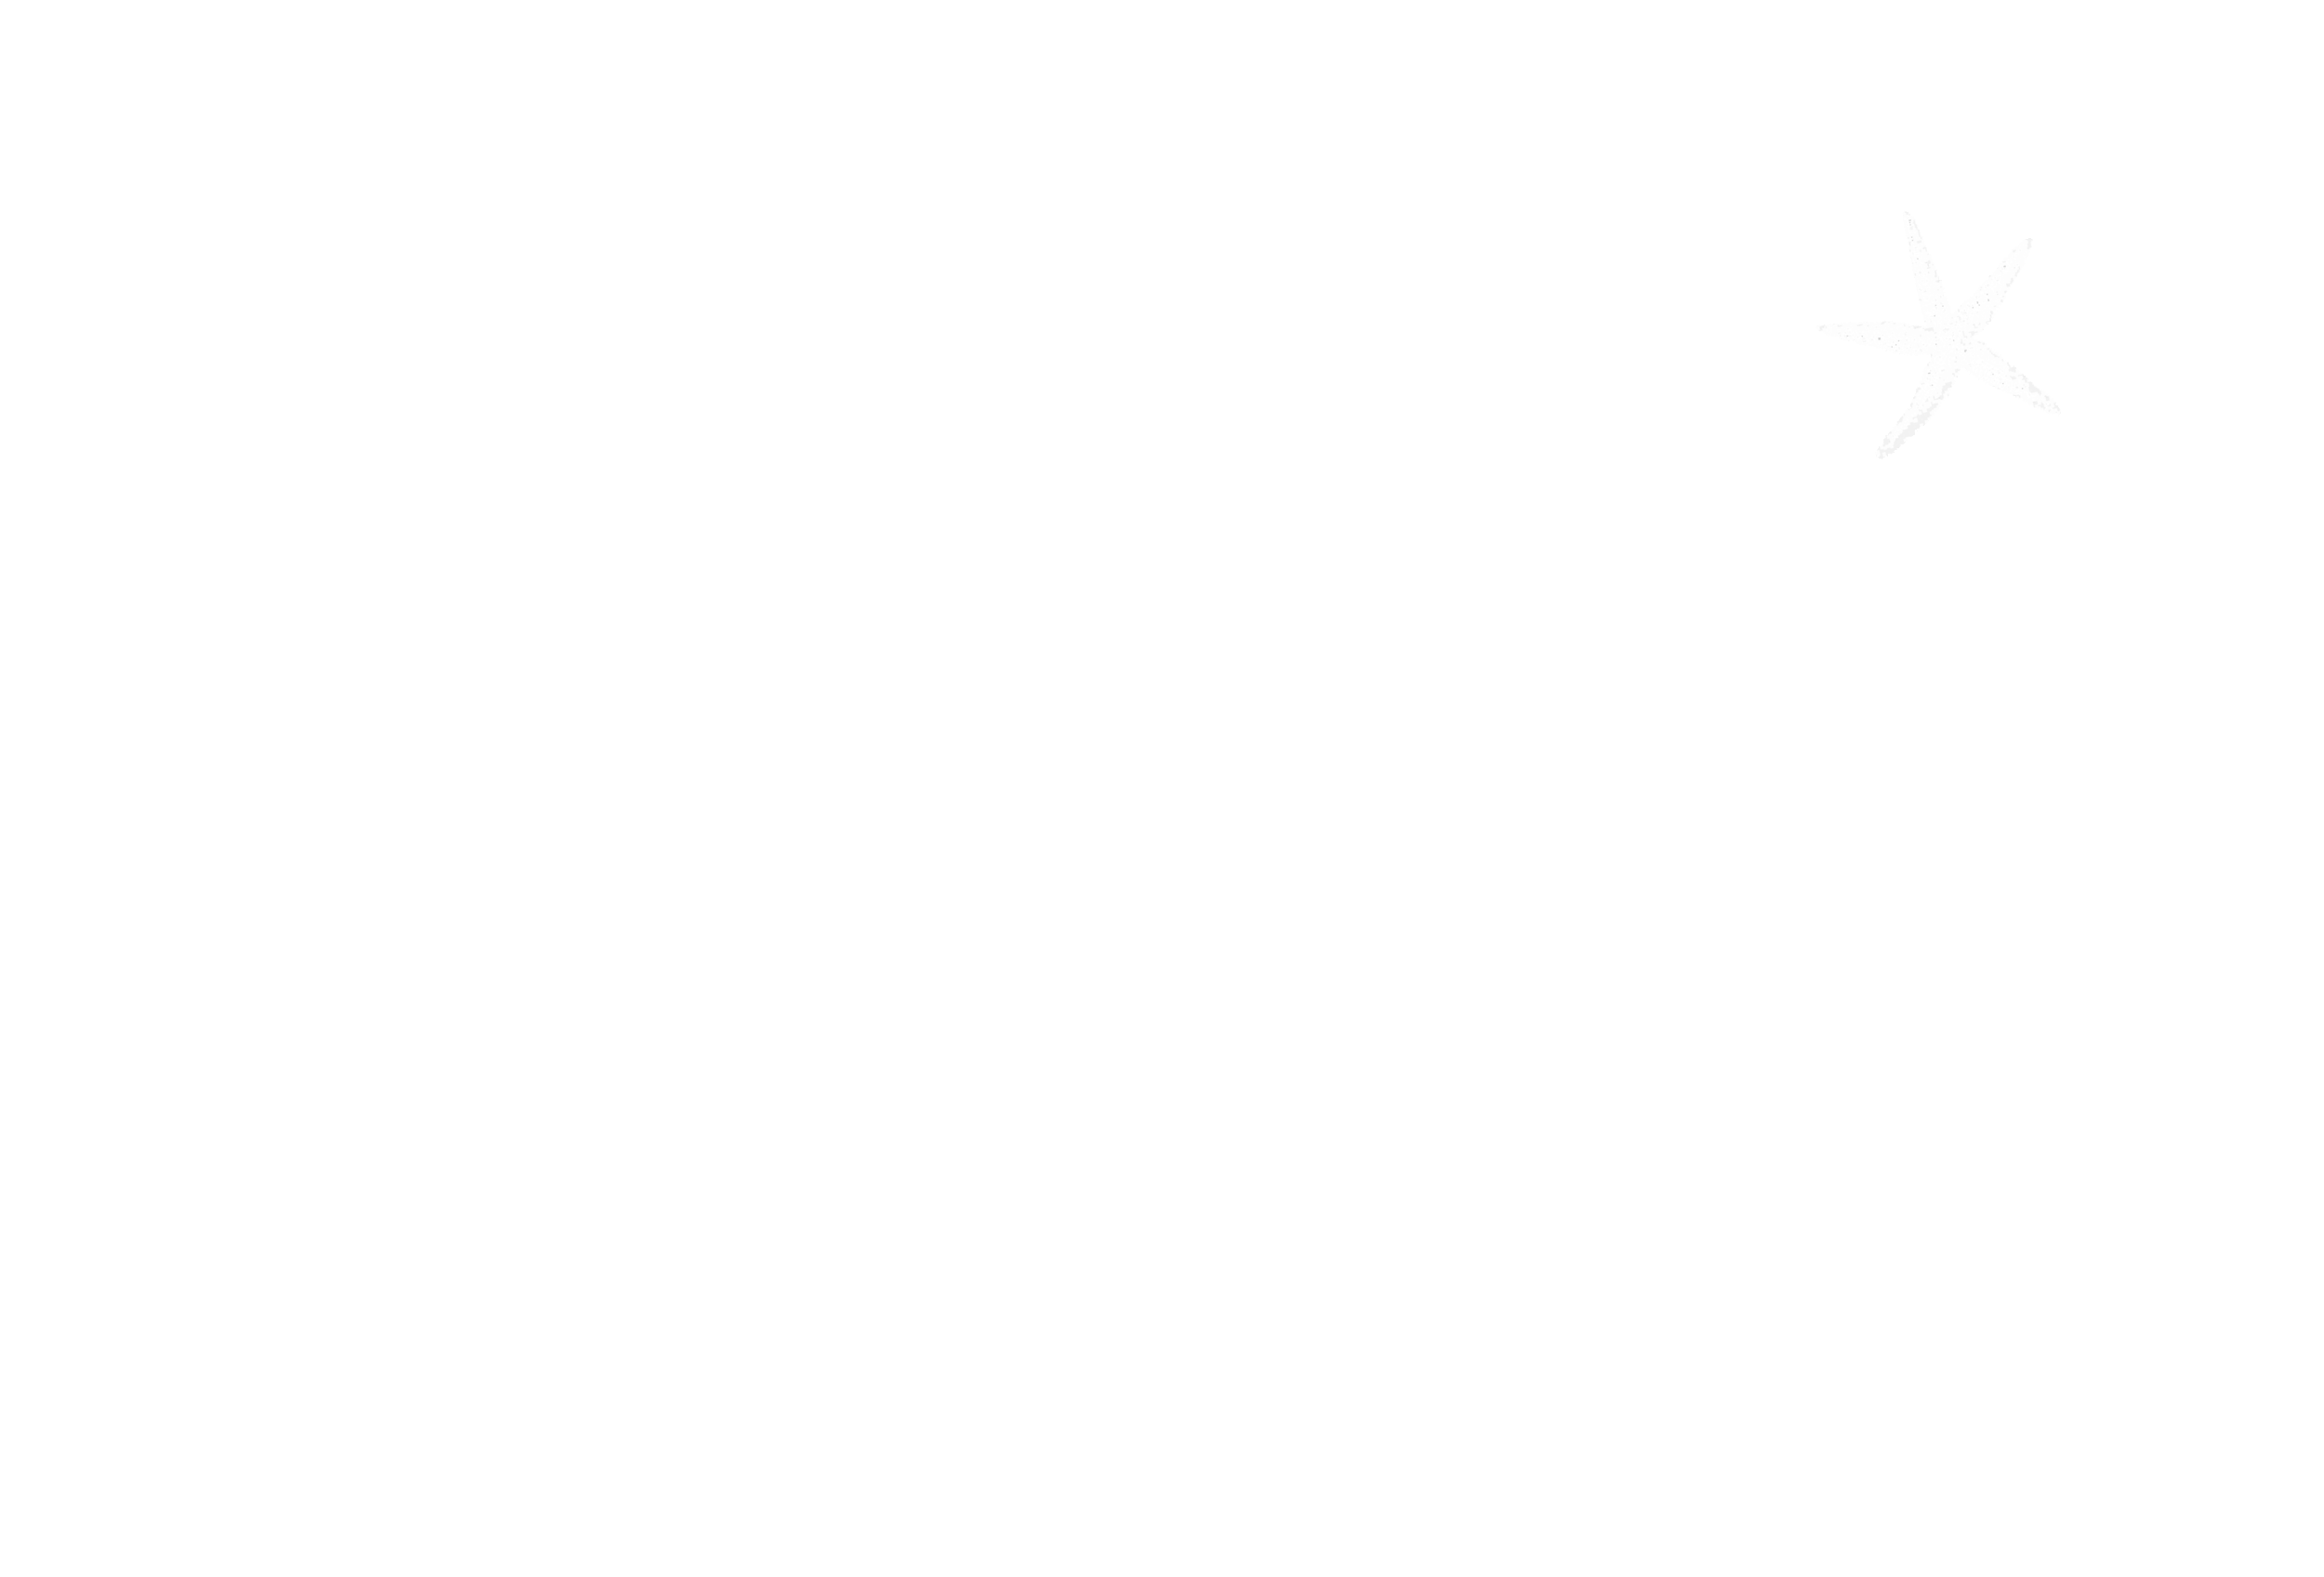 Callen's Restaurant